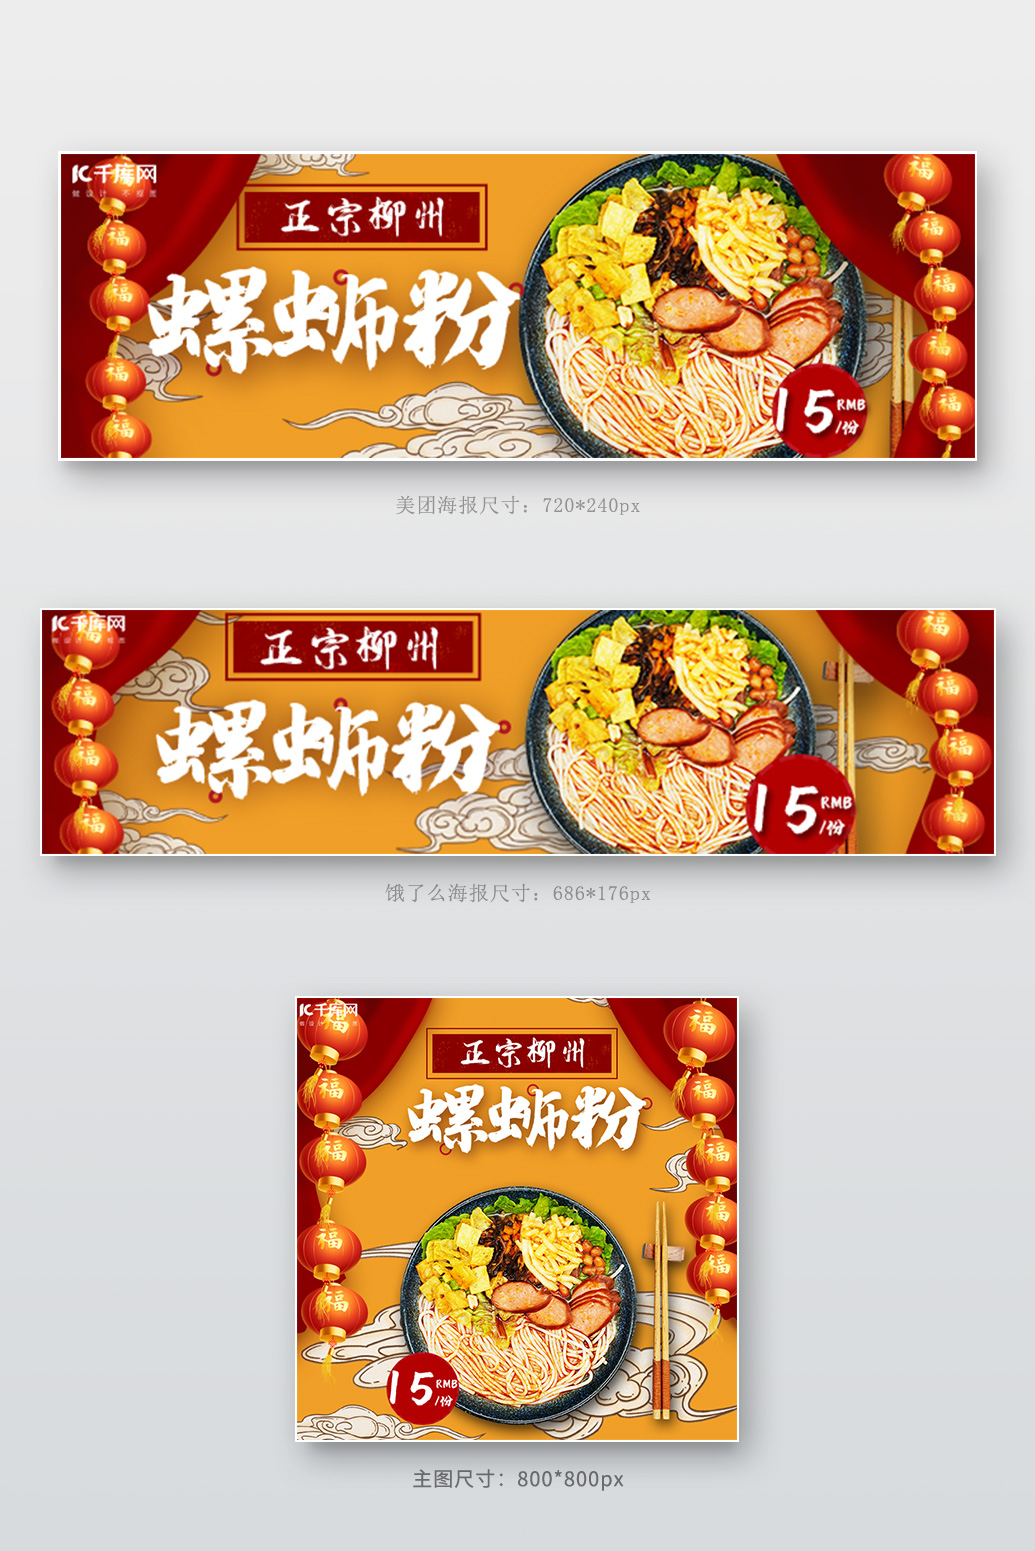 美团饿了么电商外卖美食螺蛳粉黄色 红色国潮中国风店招图片